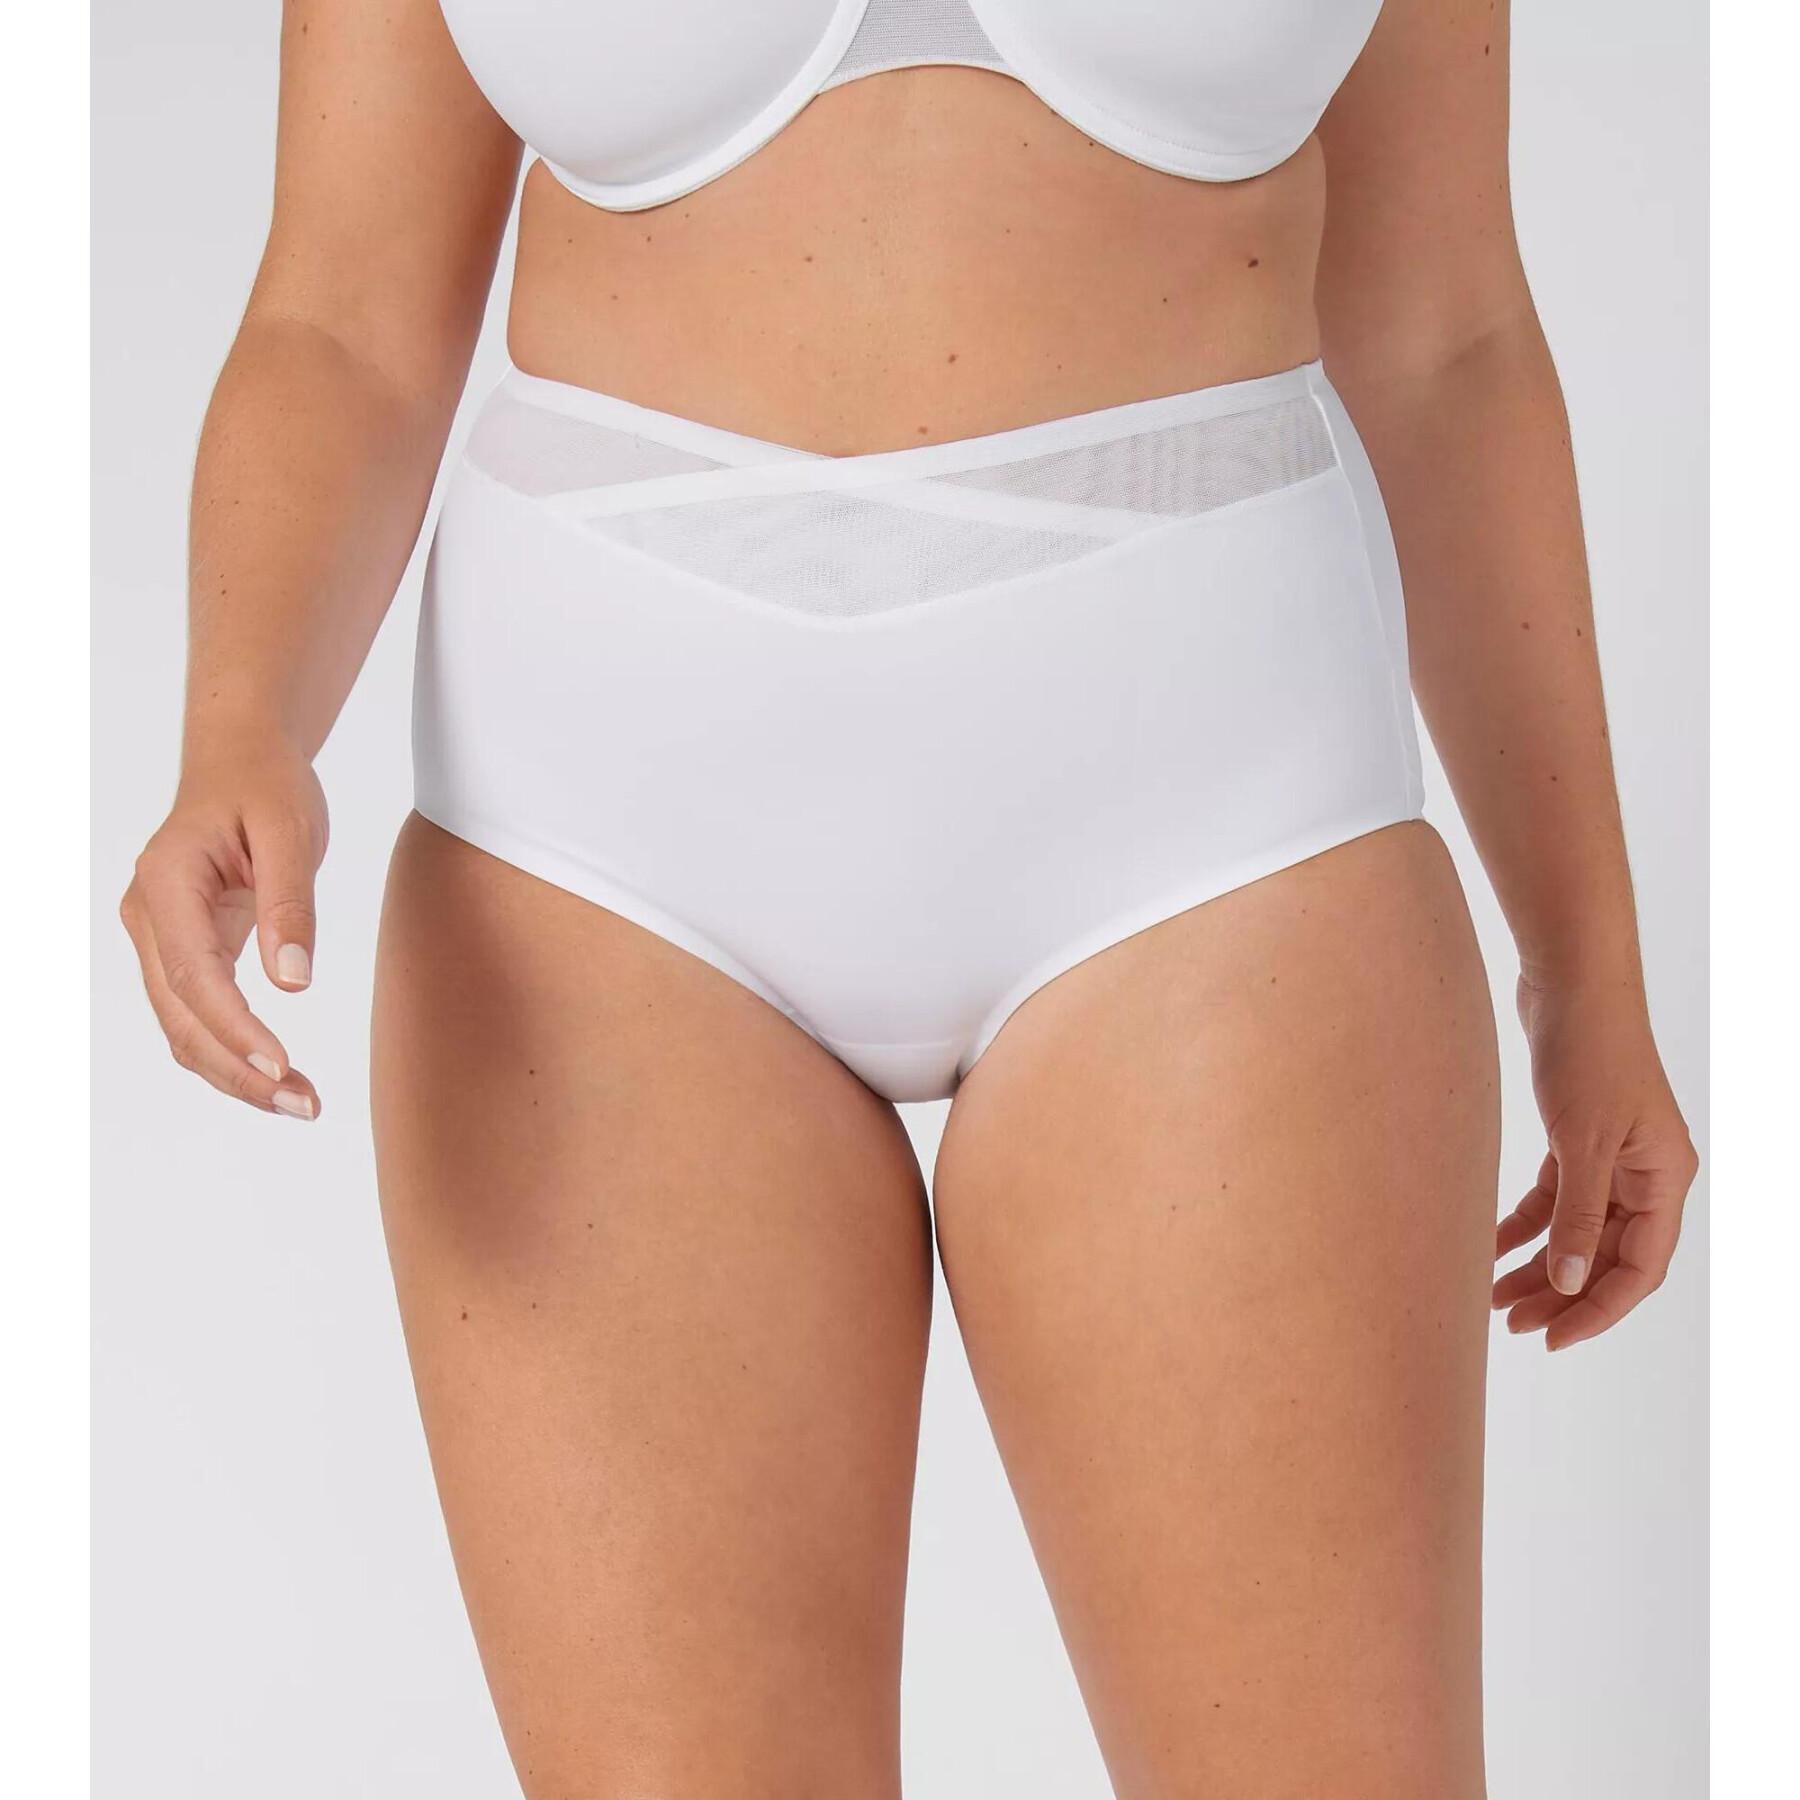 Women's panties Triumph True Shape Sensation Maxi